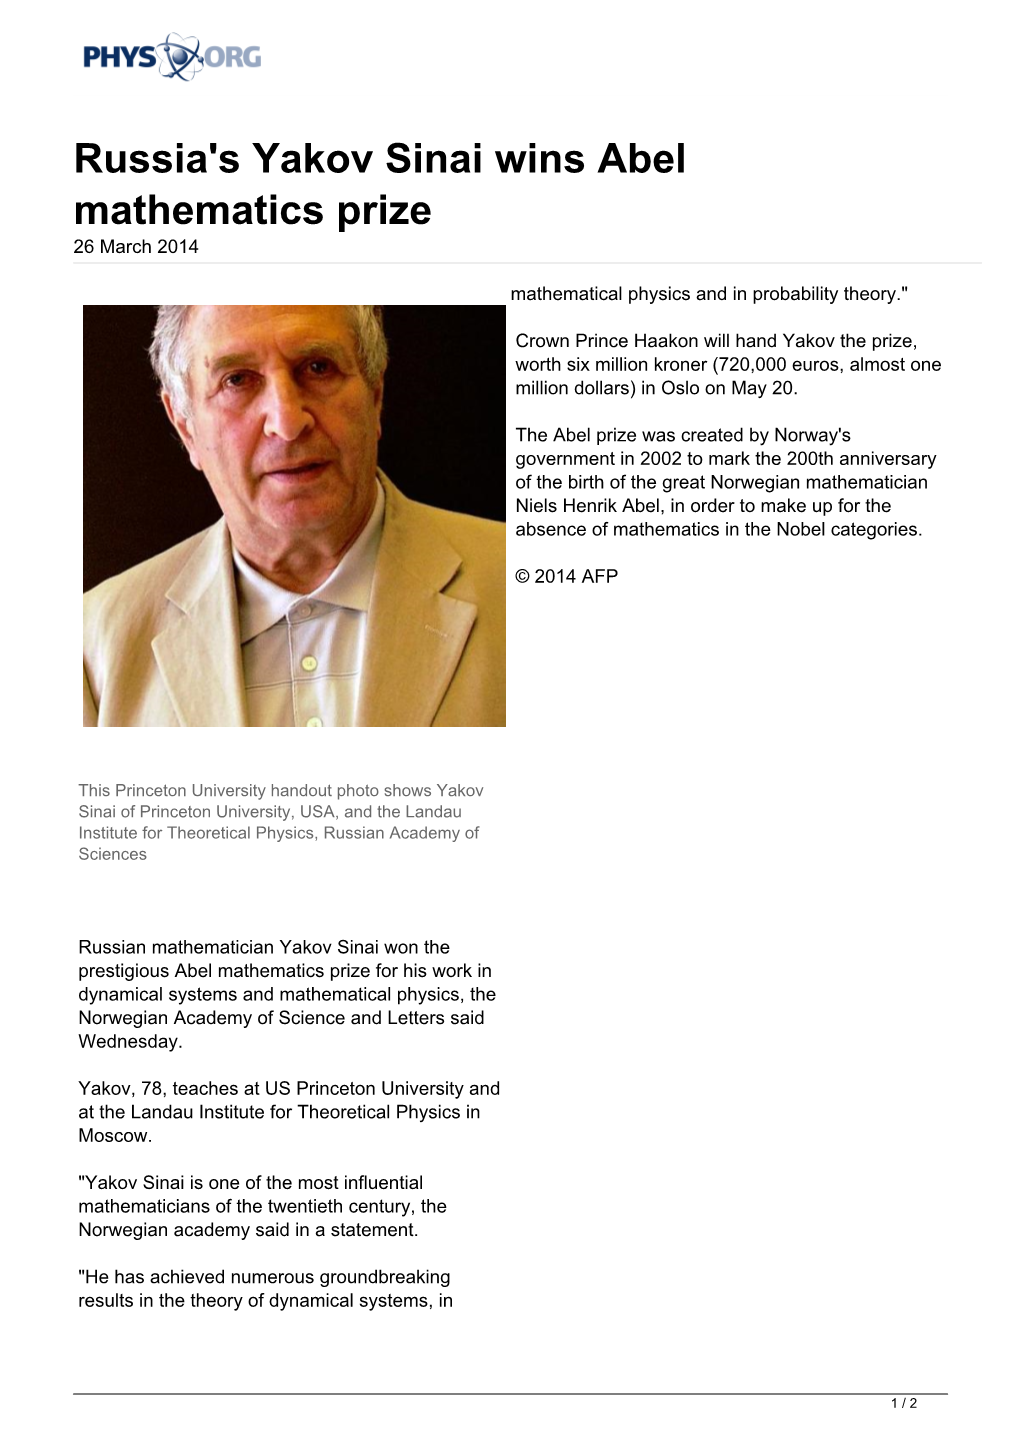 Russia's Yakov Sinai Wins Abel Mathematics Prize 26 March 2014